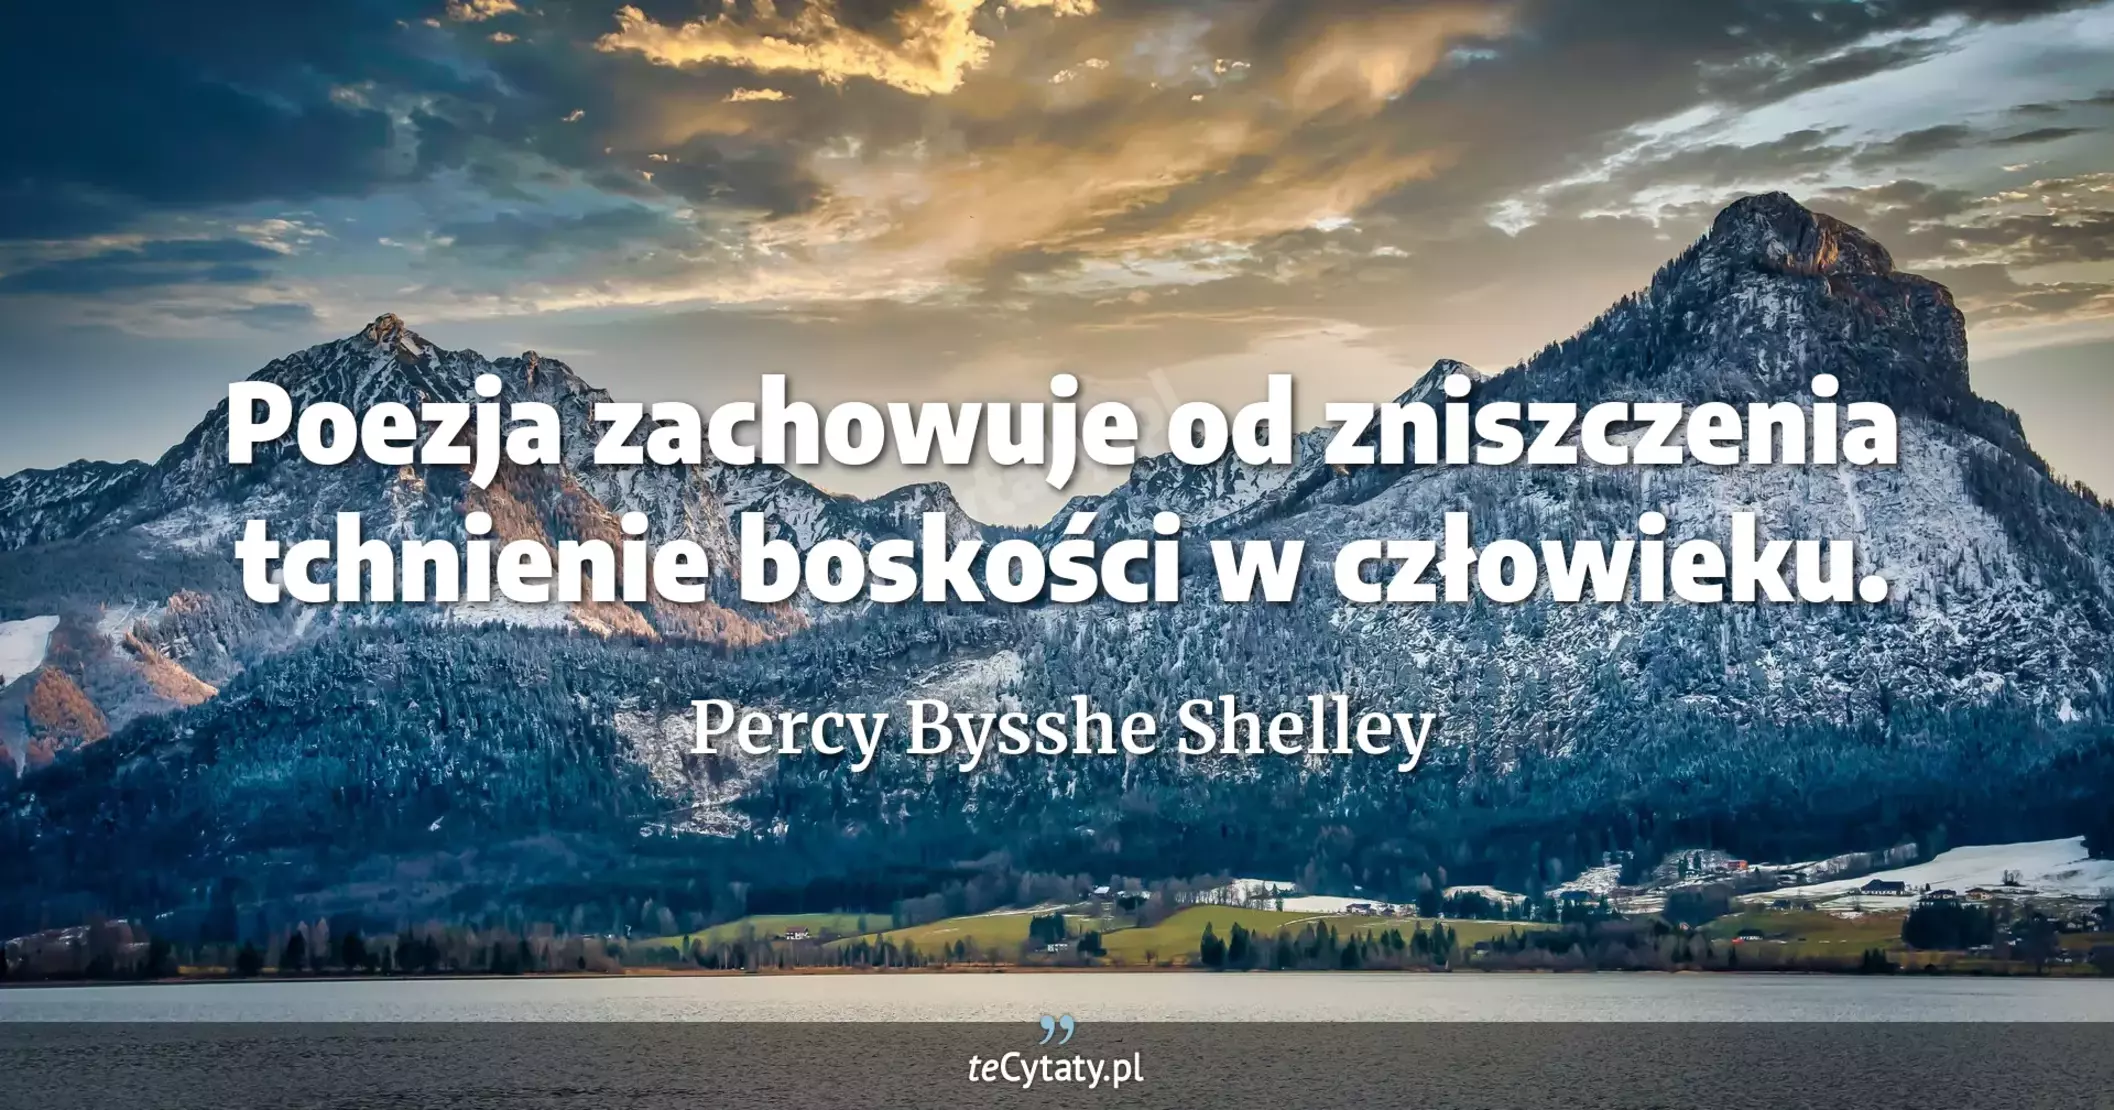 Poezja zachowuje od zniszczenia tchnienie boskości w człowieku. - Percy Bysshe Shelley